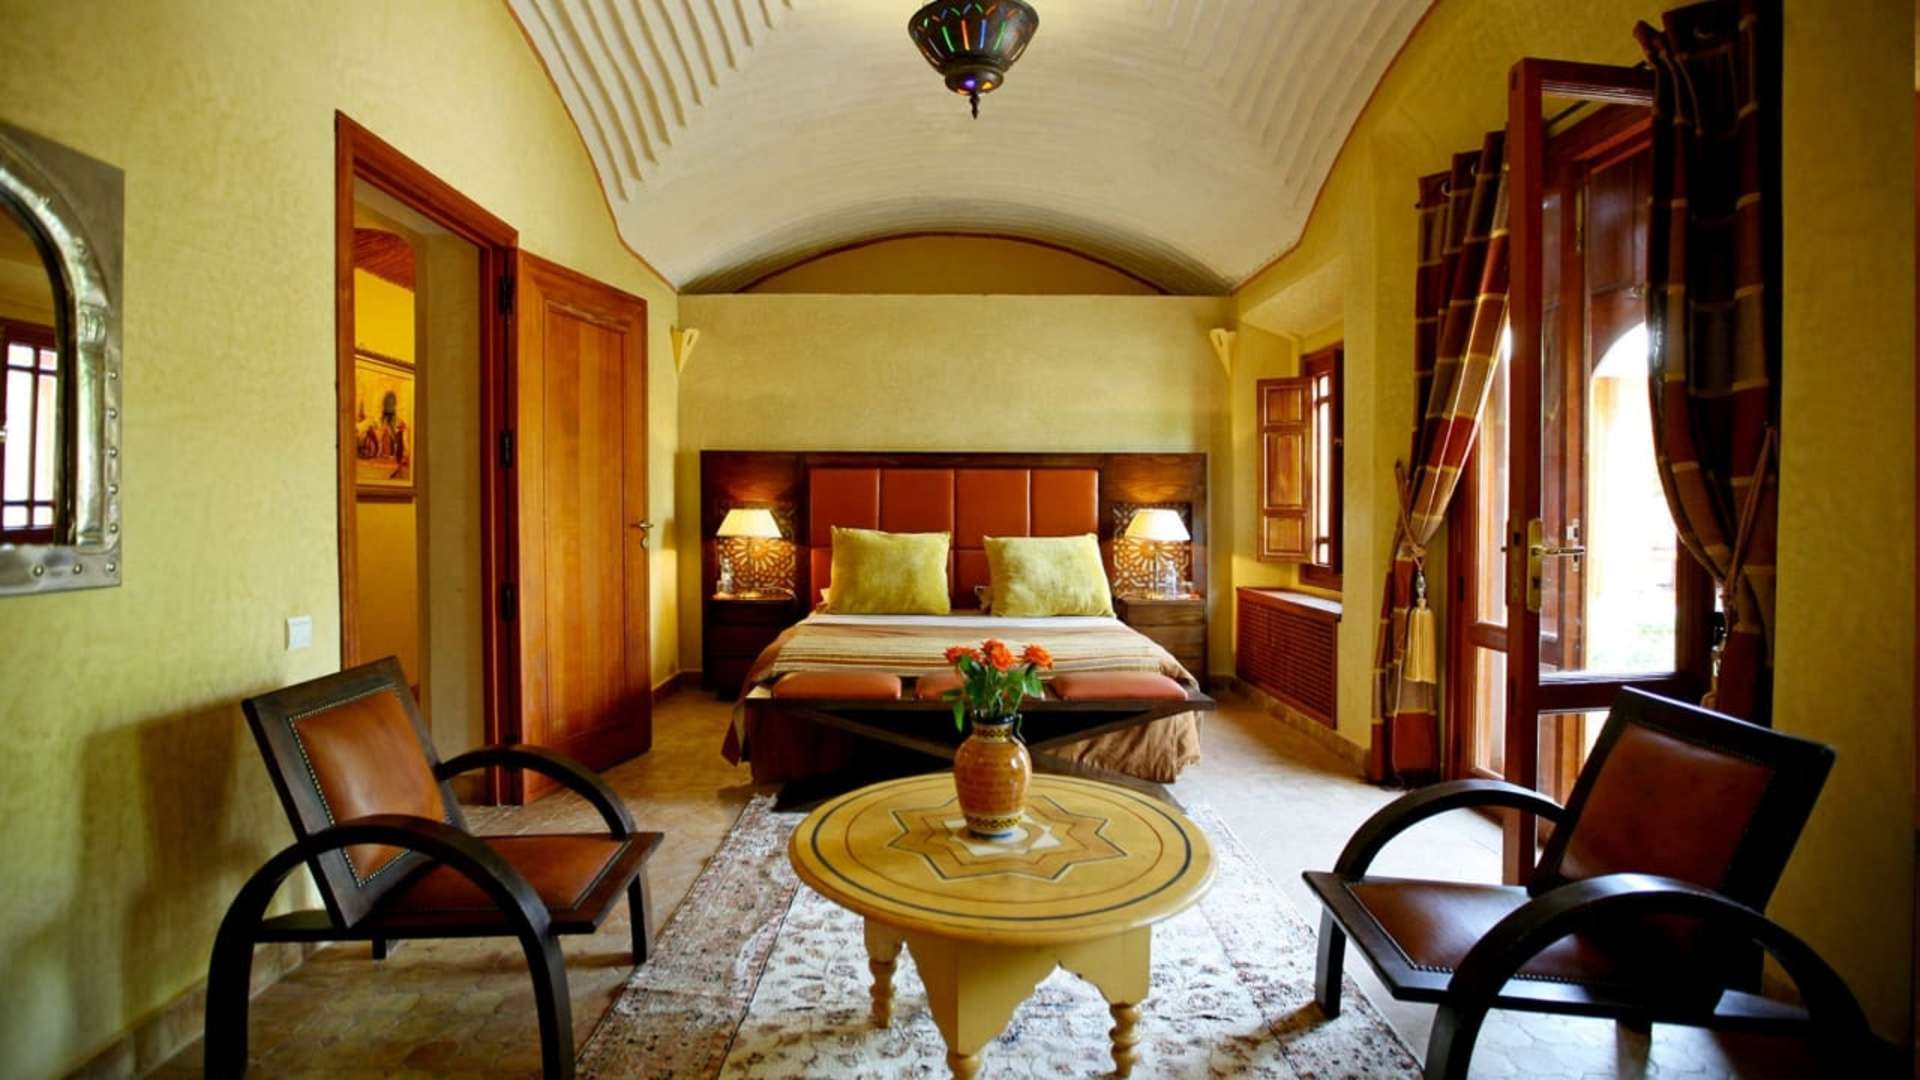 Location de vacances,Villa,Villa 5 suites en première ligne sur le golf d'Amelkis,Marrakech,Amelkis Golf Resort